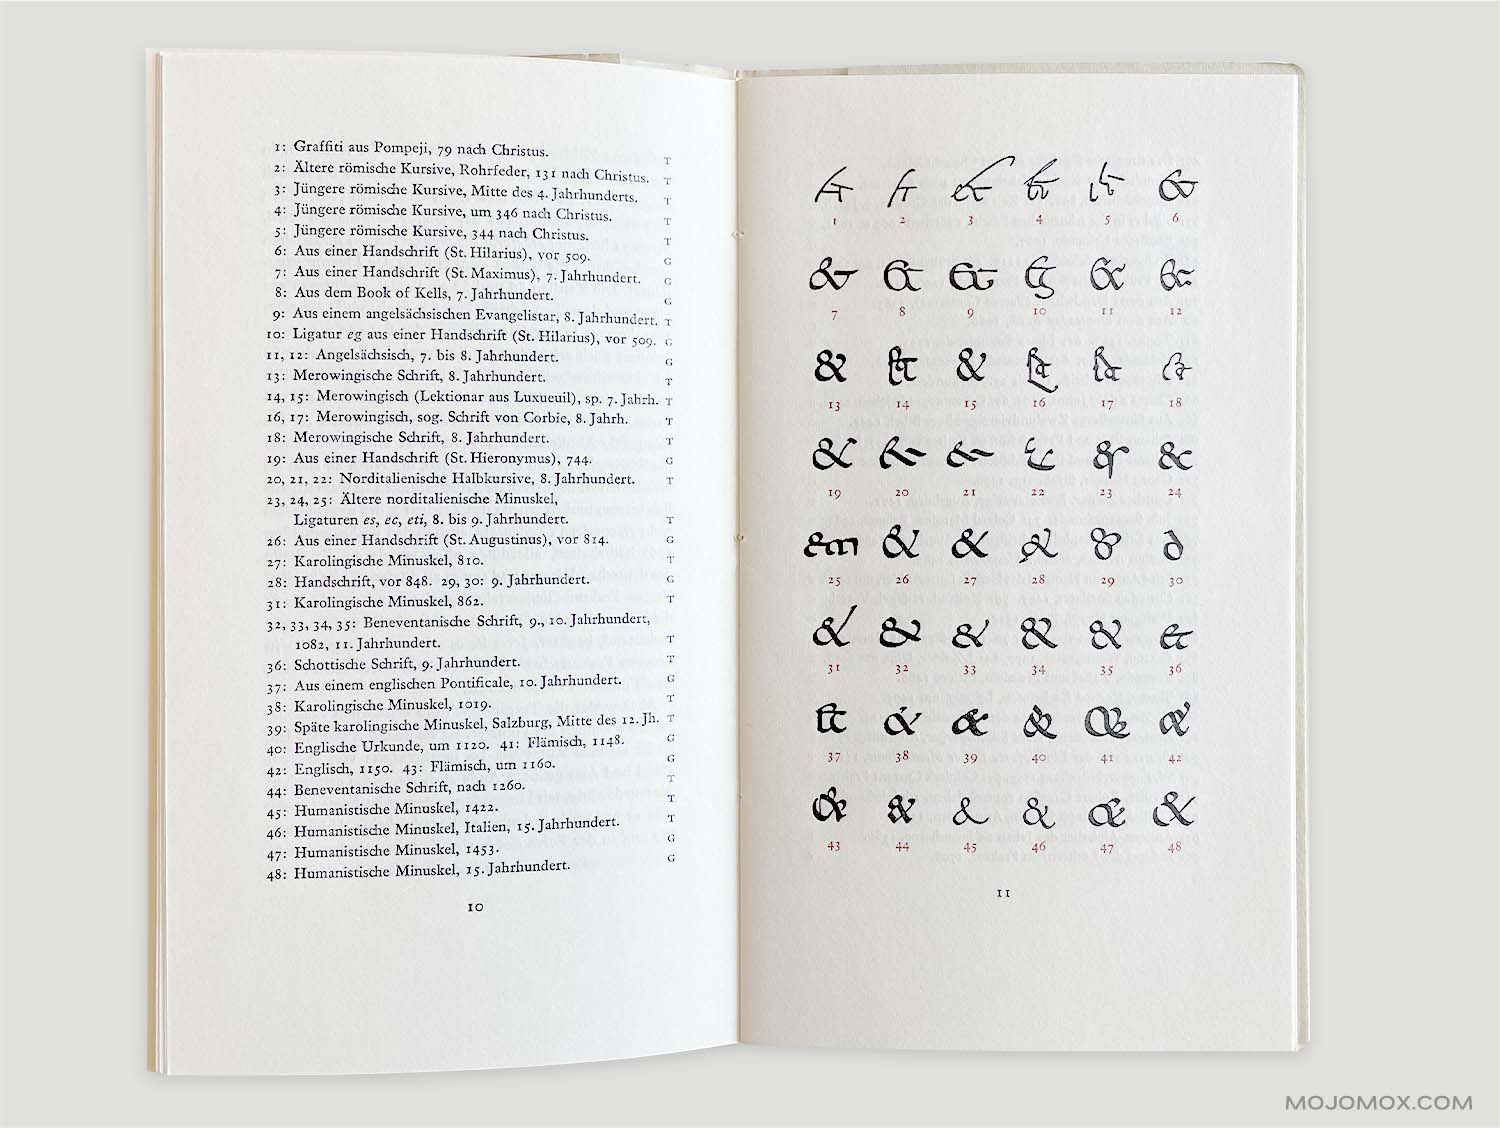 Ampersand illustrations from Jan Tschichold’s Formenwandlungen der Et-Zeichen. Pages 10 and 11.